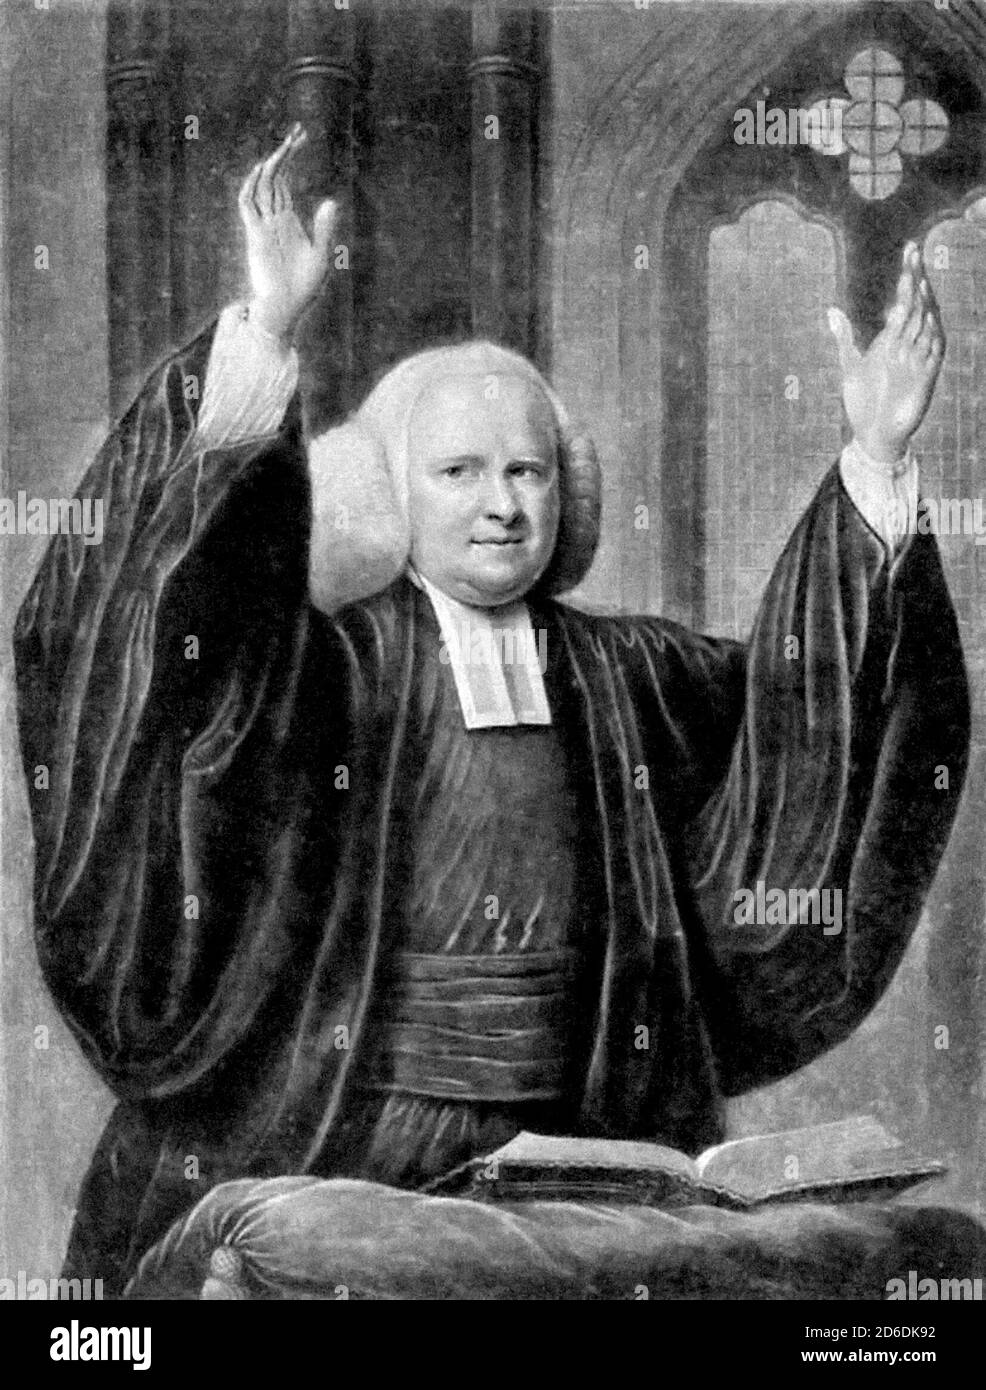 George Whitefield. Ritratto del clero anglicano inglese, reverendo George Whitefield (1714-1770), mezzotint di John Greenwood, 1769. Whitefield fu uno dei fondatori del Metodismo e del movimento evangelico. Foto Stock